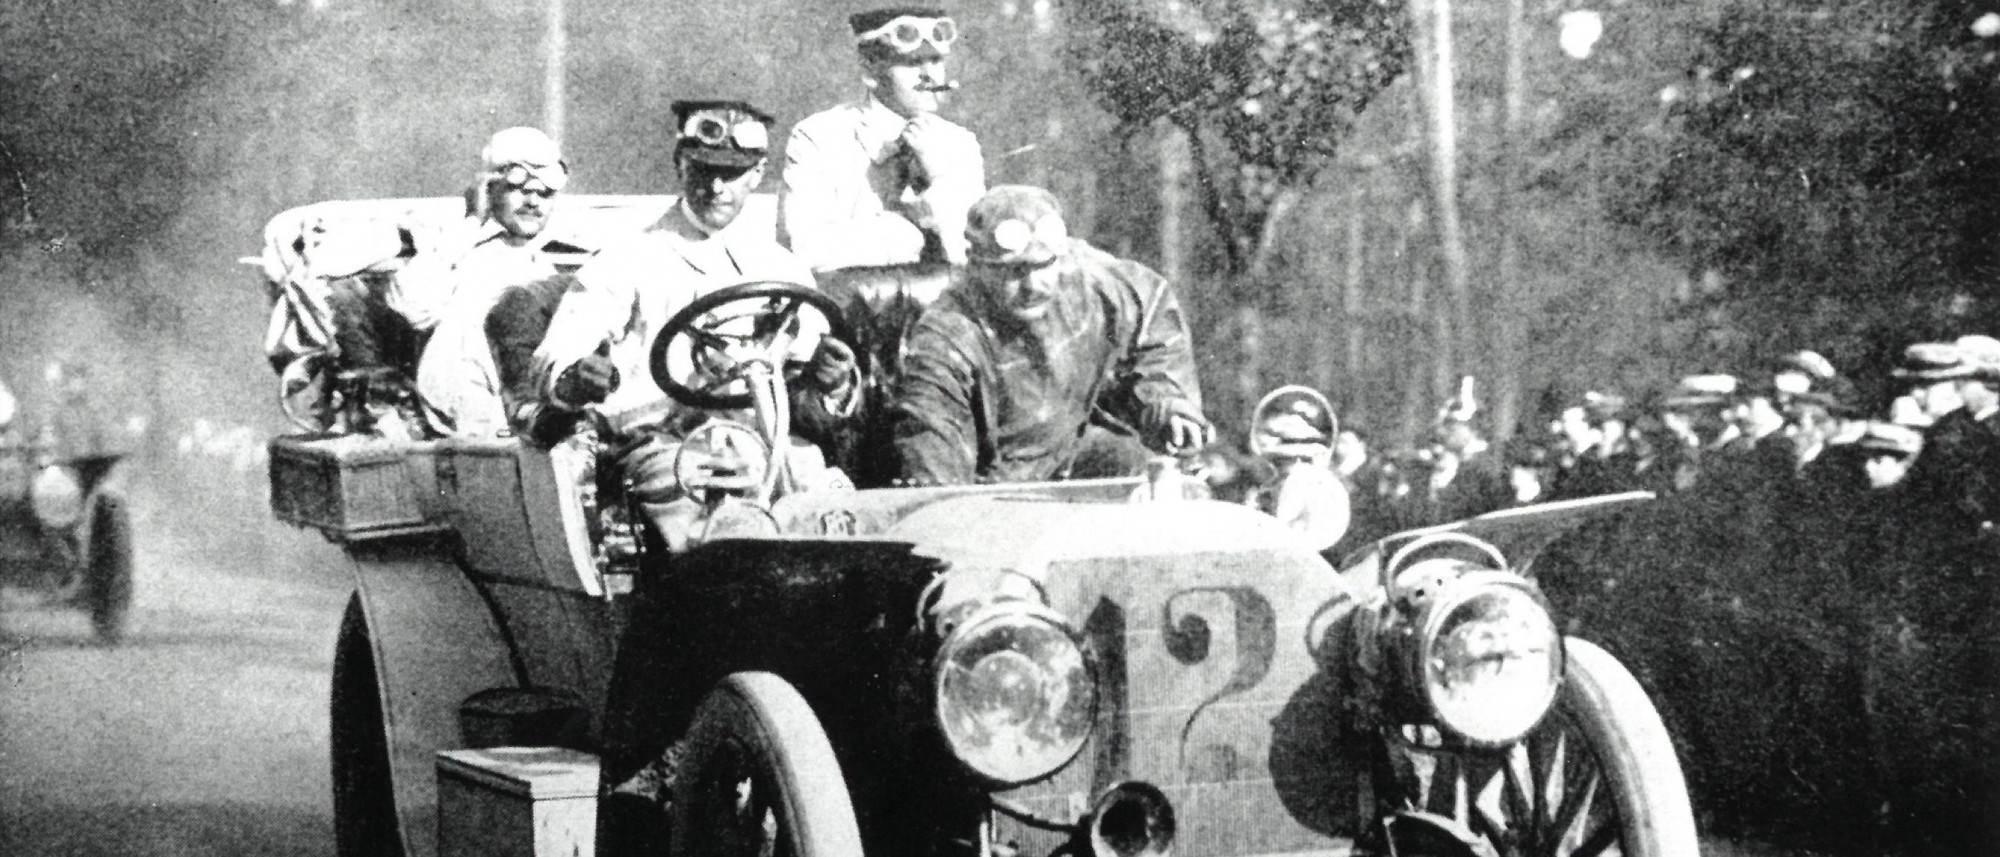 Schwarz-weiß-Foto Edgar Ladenburg und Team im Mercedes an Zuschauern vorbeifahrend